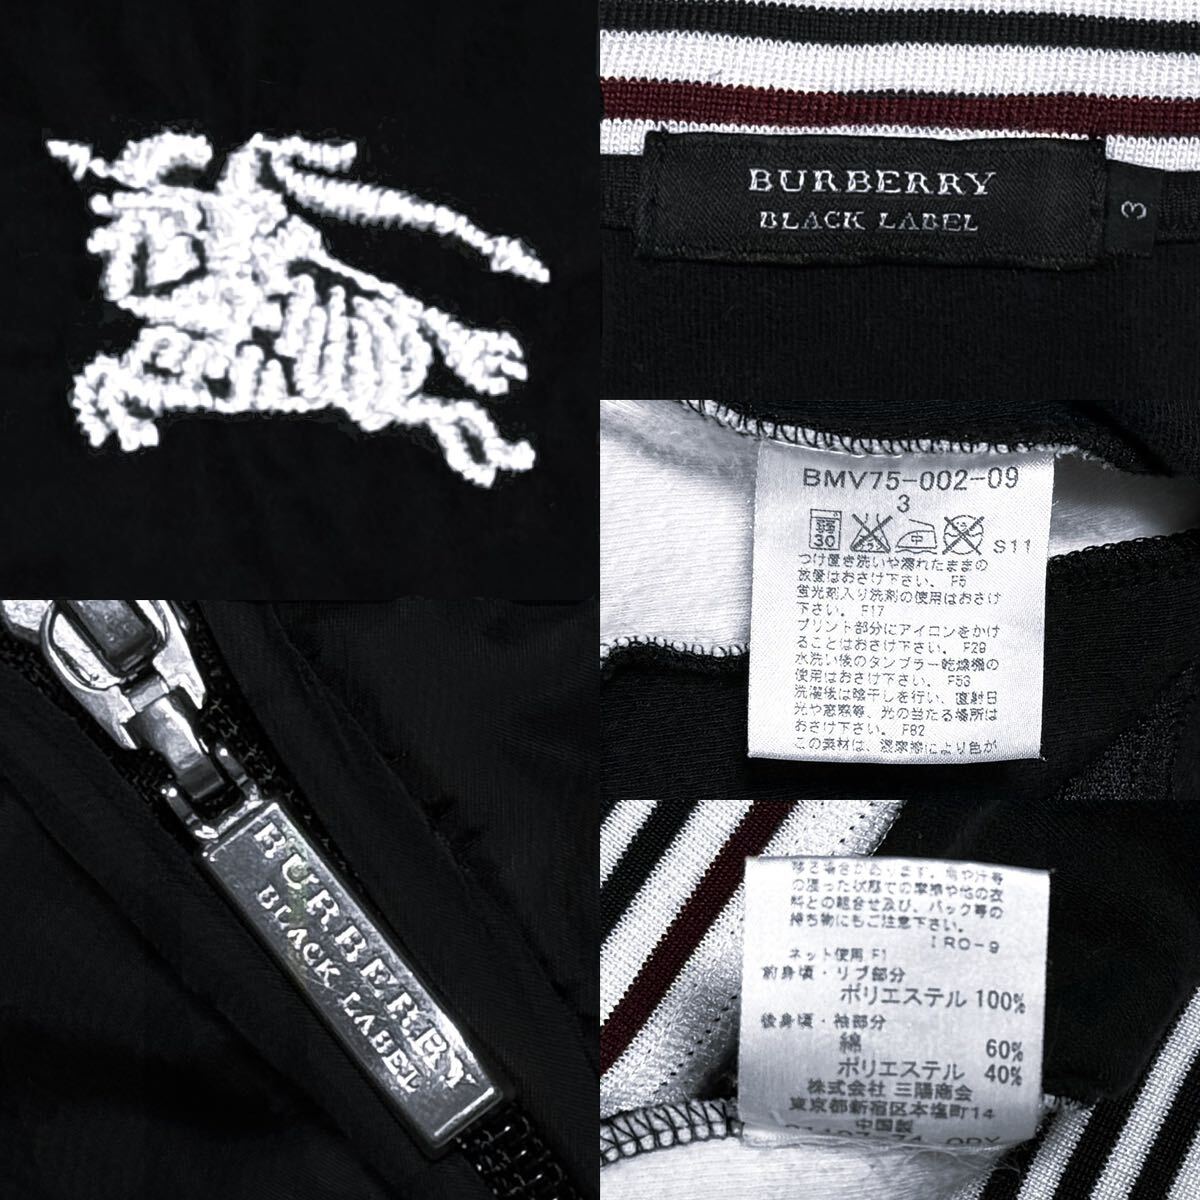  прекрасный товар Burberry Black Label шланг вышивка noba окантовка рукав линия спортивная куртка 3/L чёрный джерси блузон BURBERRY BLACK LABEL